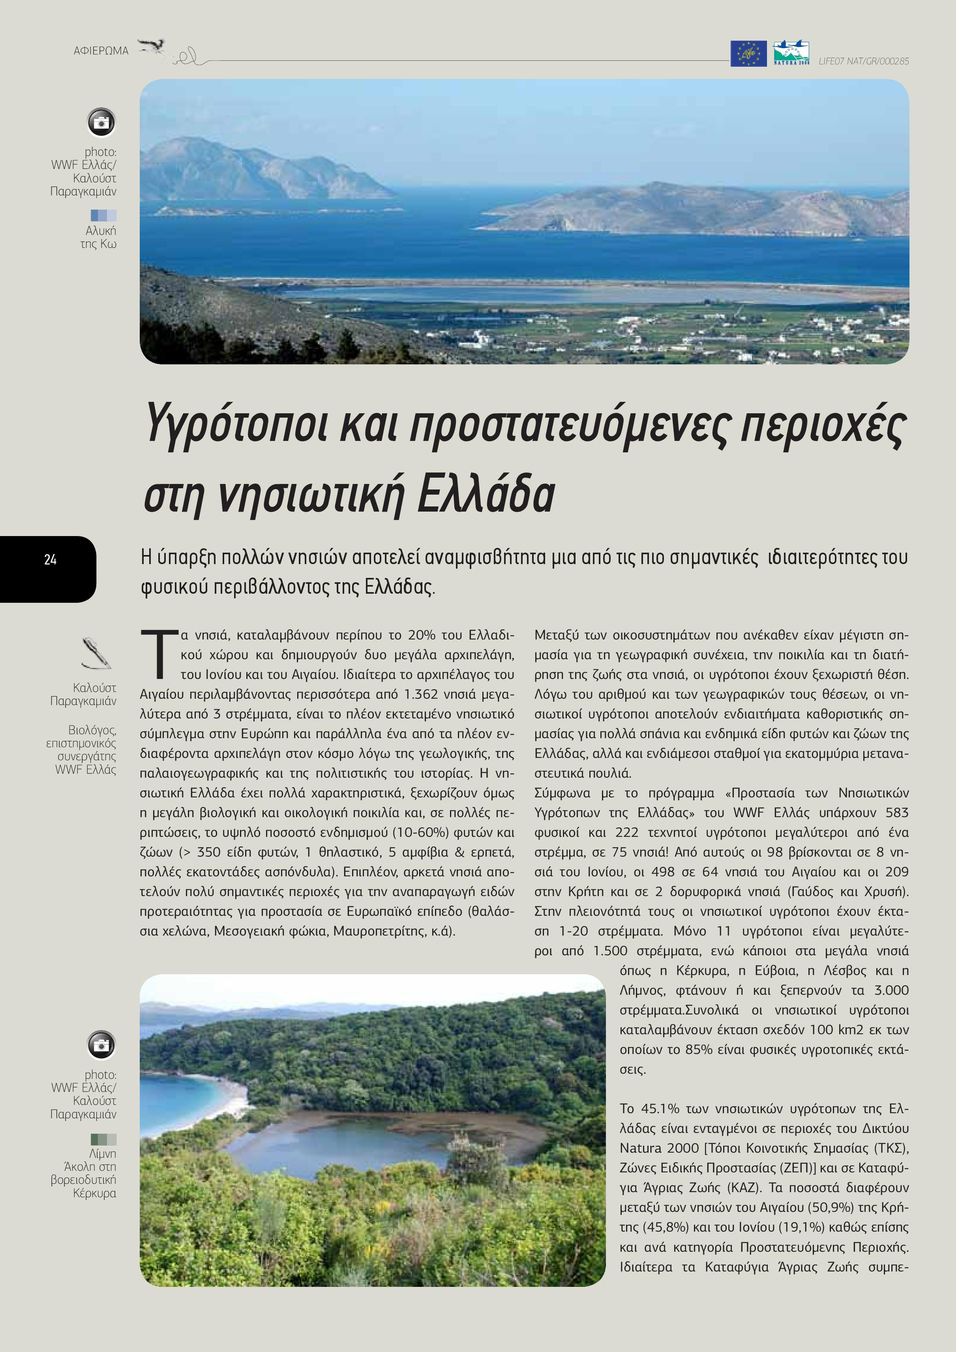 1% των νησιωτικών υγρότοπων της Ελλάδας είναι ενταγμένοι σε περιοχές του Δικτύου Natura 2000 [Τόποι Κοινοτικής Σημασίας (ΤΚΣ), Ζώνες Ειδικής Προστασίας (ΖΕΠ)] και σε Καταφύγια Άγριας Ζωής (ΚΑΖ).